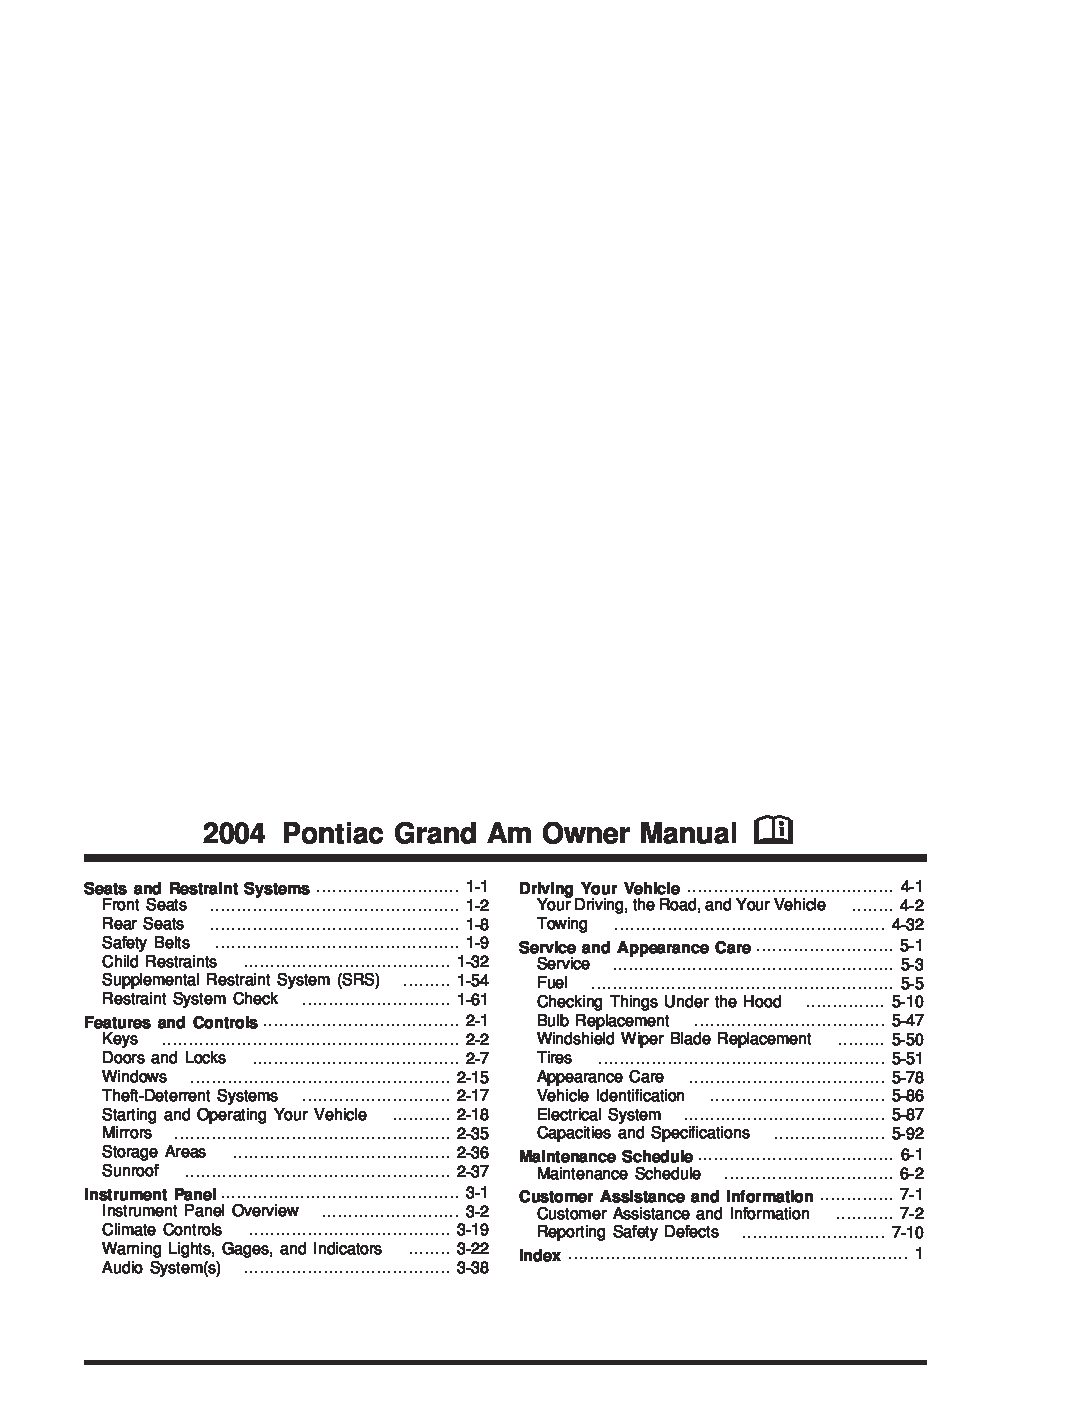 2004 pontiac grand am manual pdf